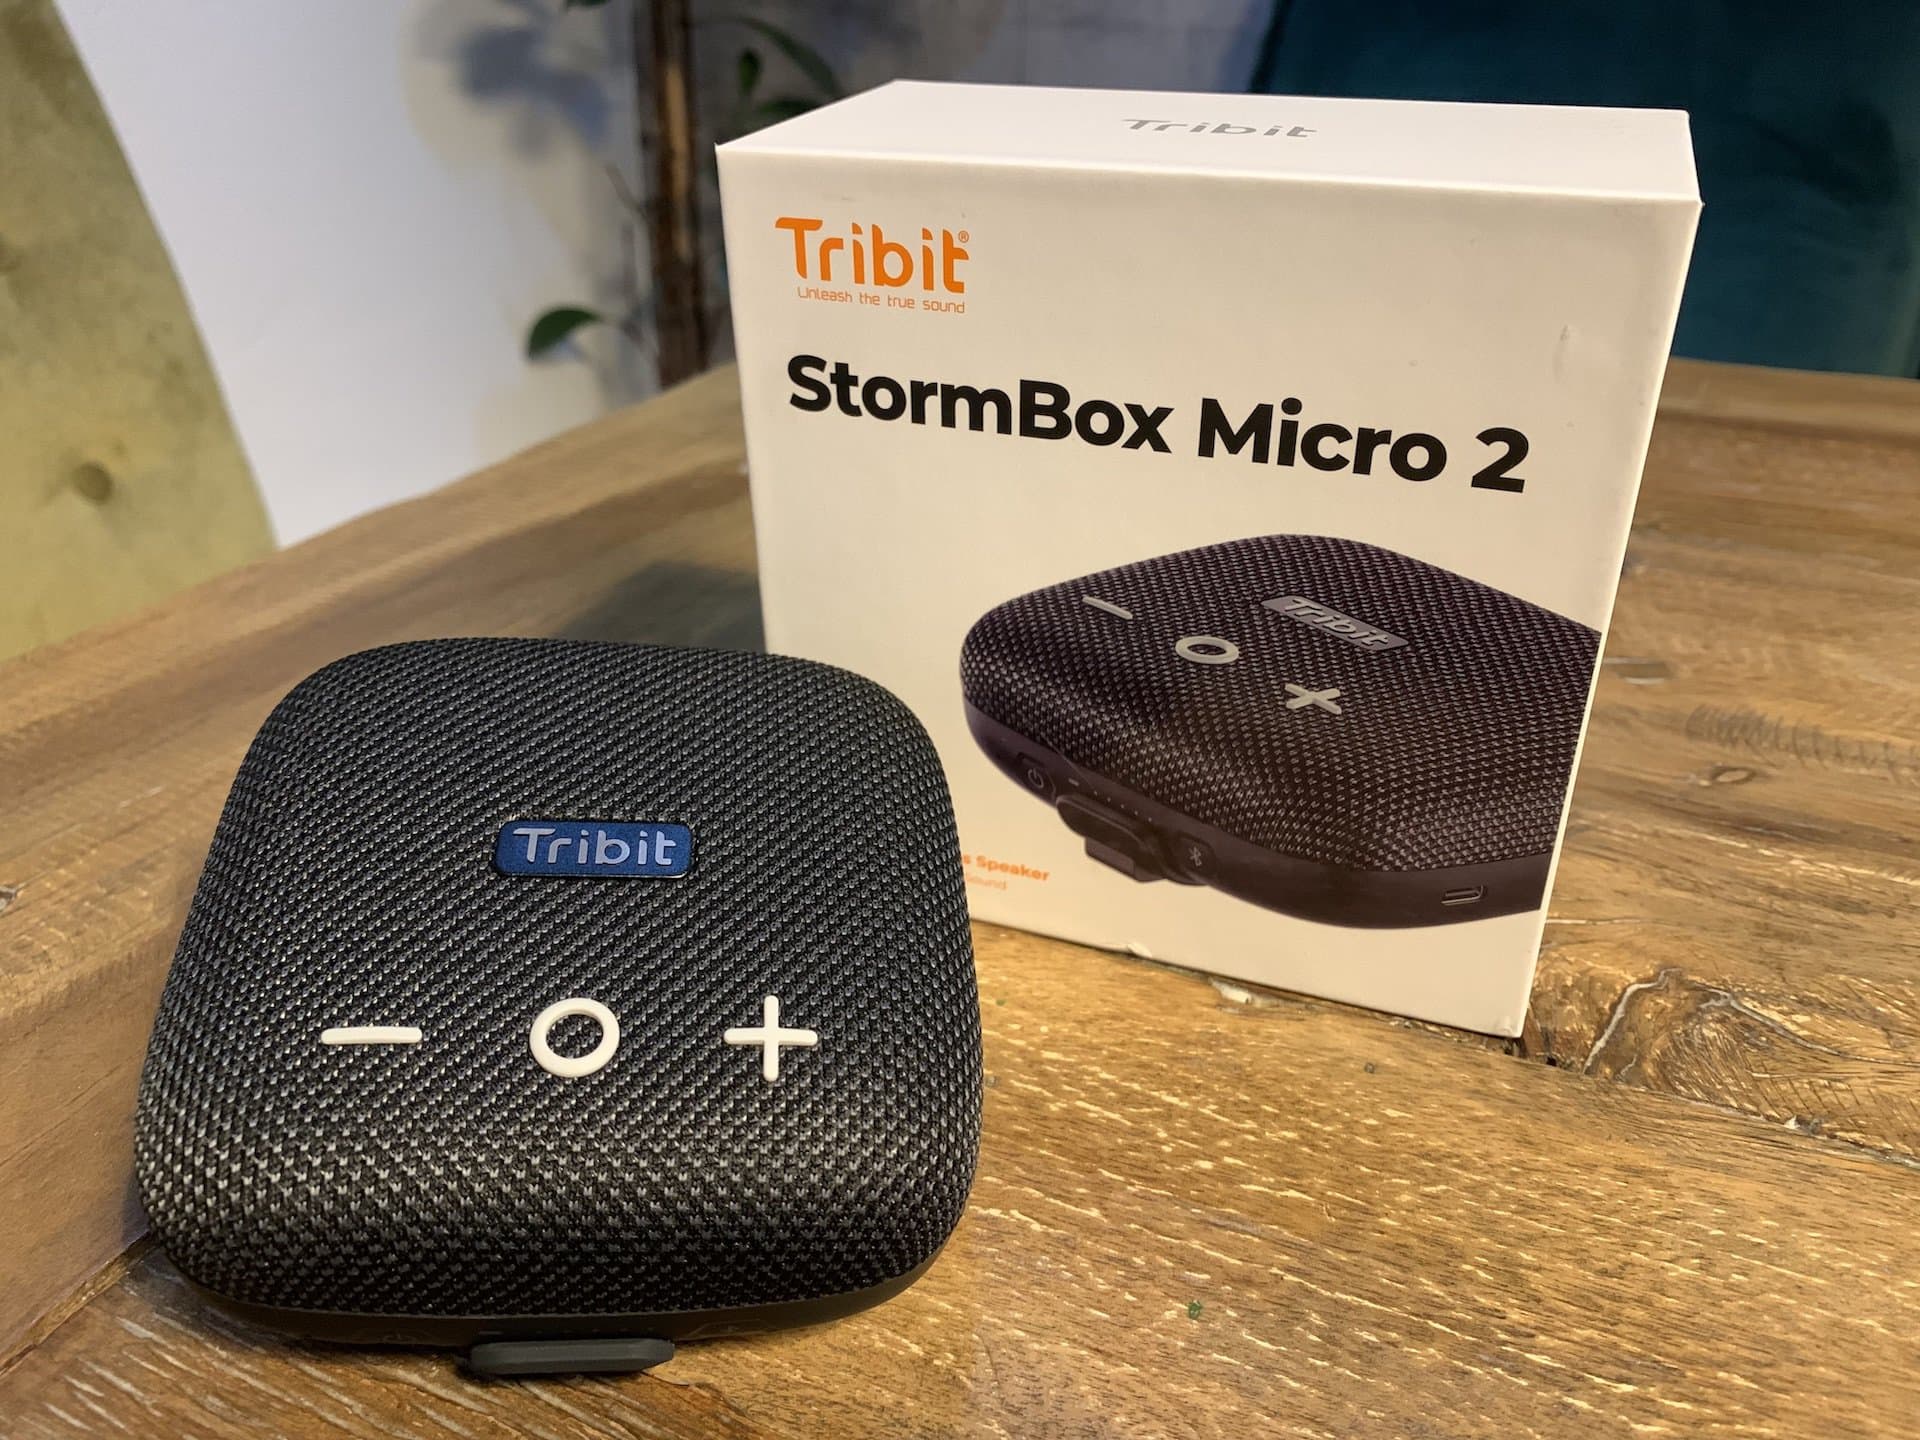 Tribit StormBox Micro 2 przetestowany w testach – mały słabszy robi dużo hałasu